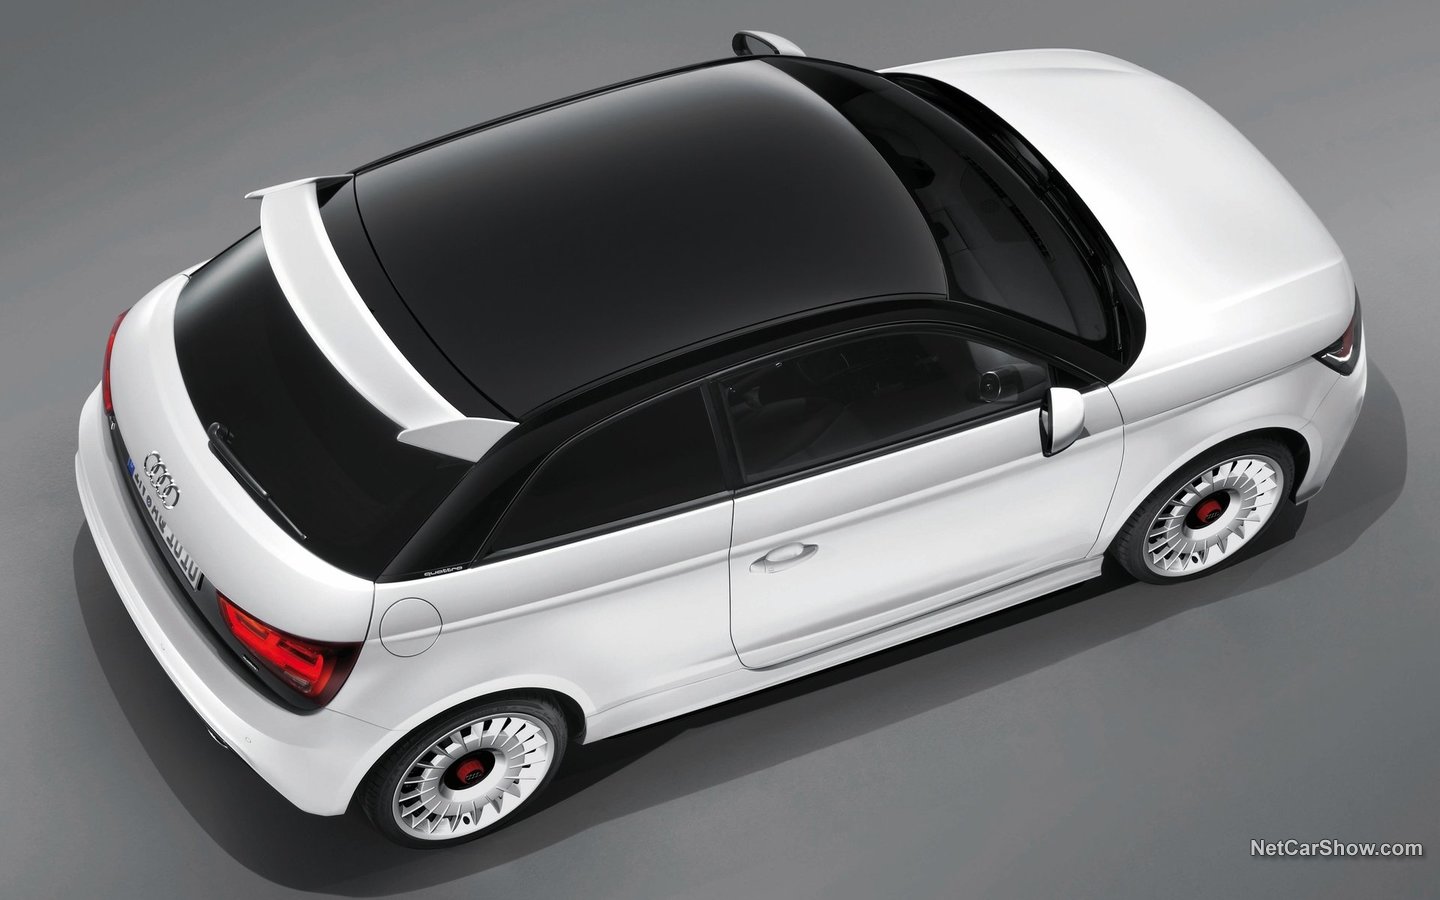 Audi A1 Quattro 2013 6e369fae